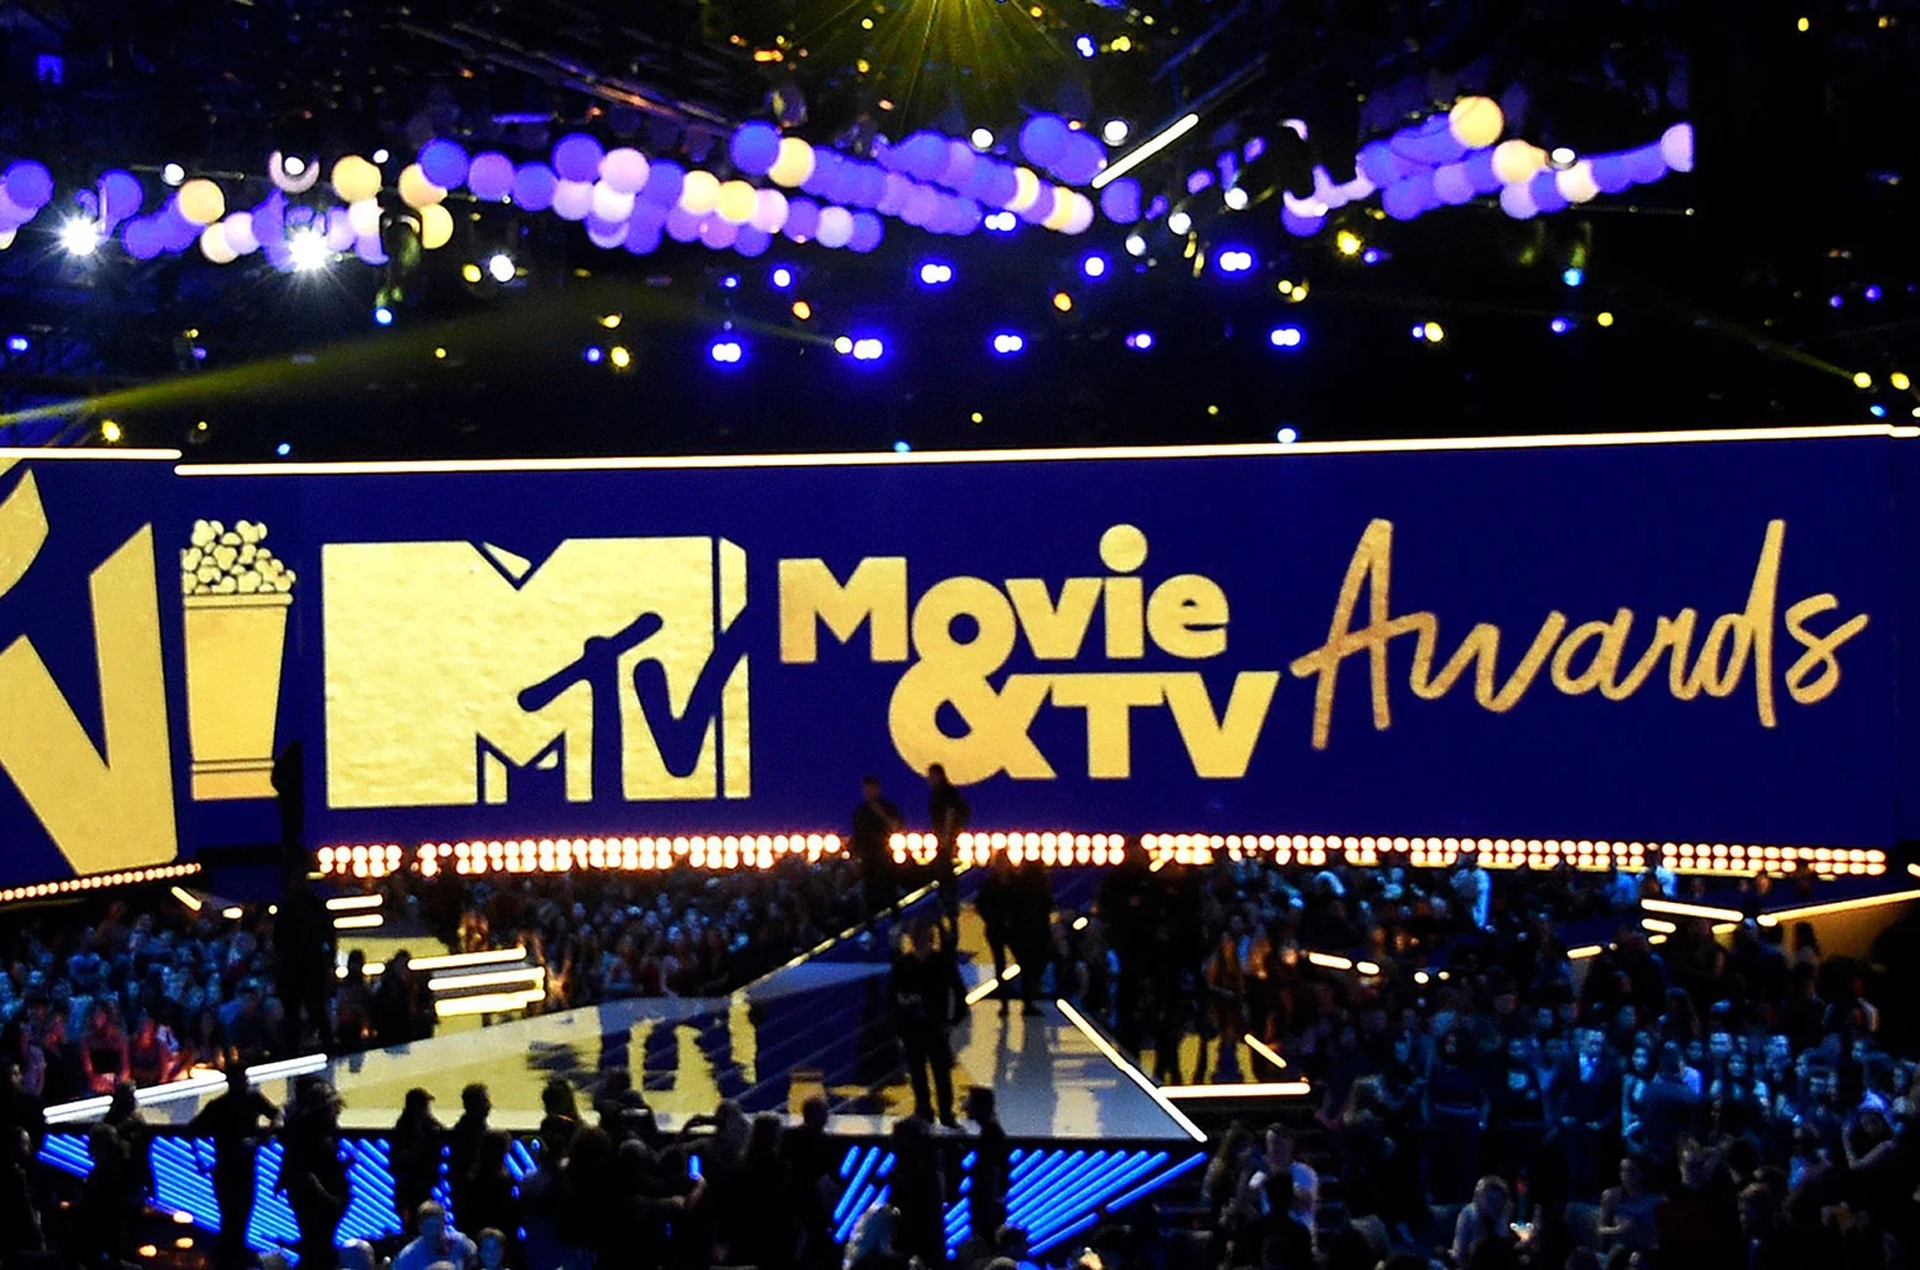 Dans cet article, nous allons passer en revue les gagnants des MTV Movie Awards 2022, ainsi que les gagnants des prix TV et Unscripted pour l'événement combiné de cette année.